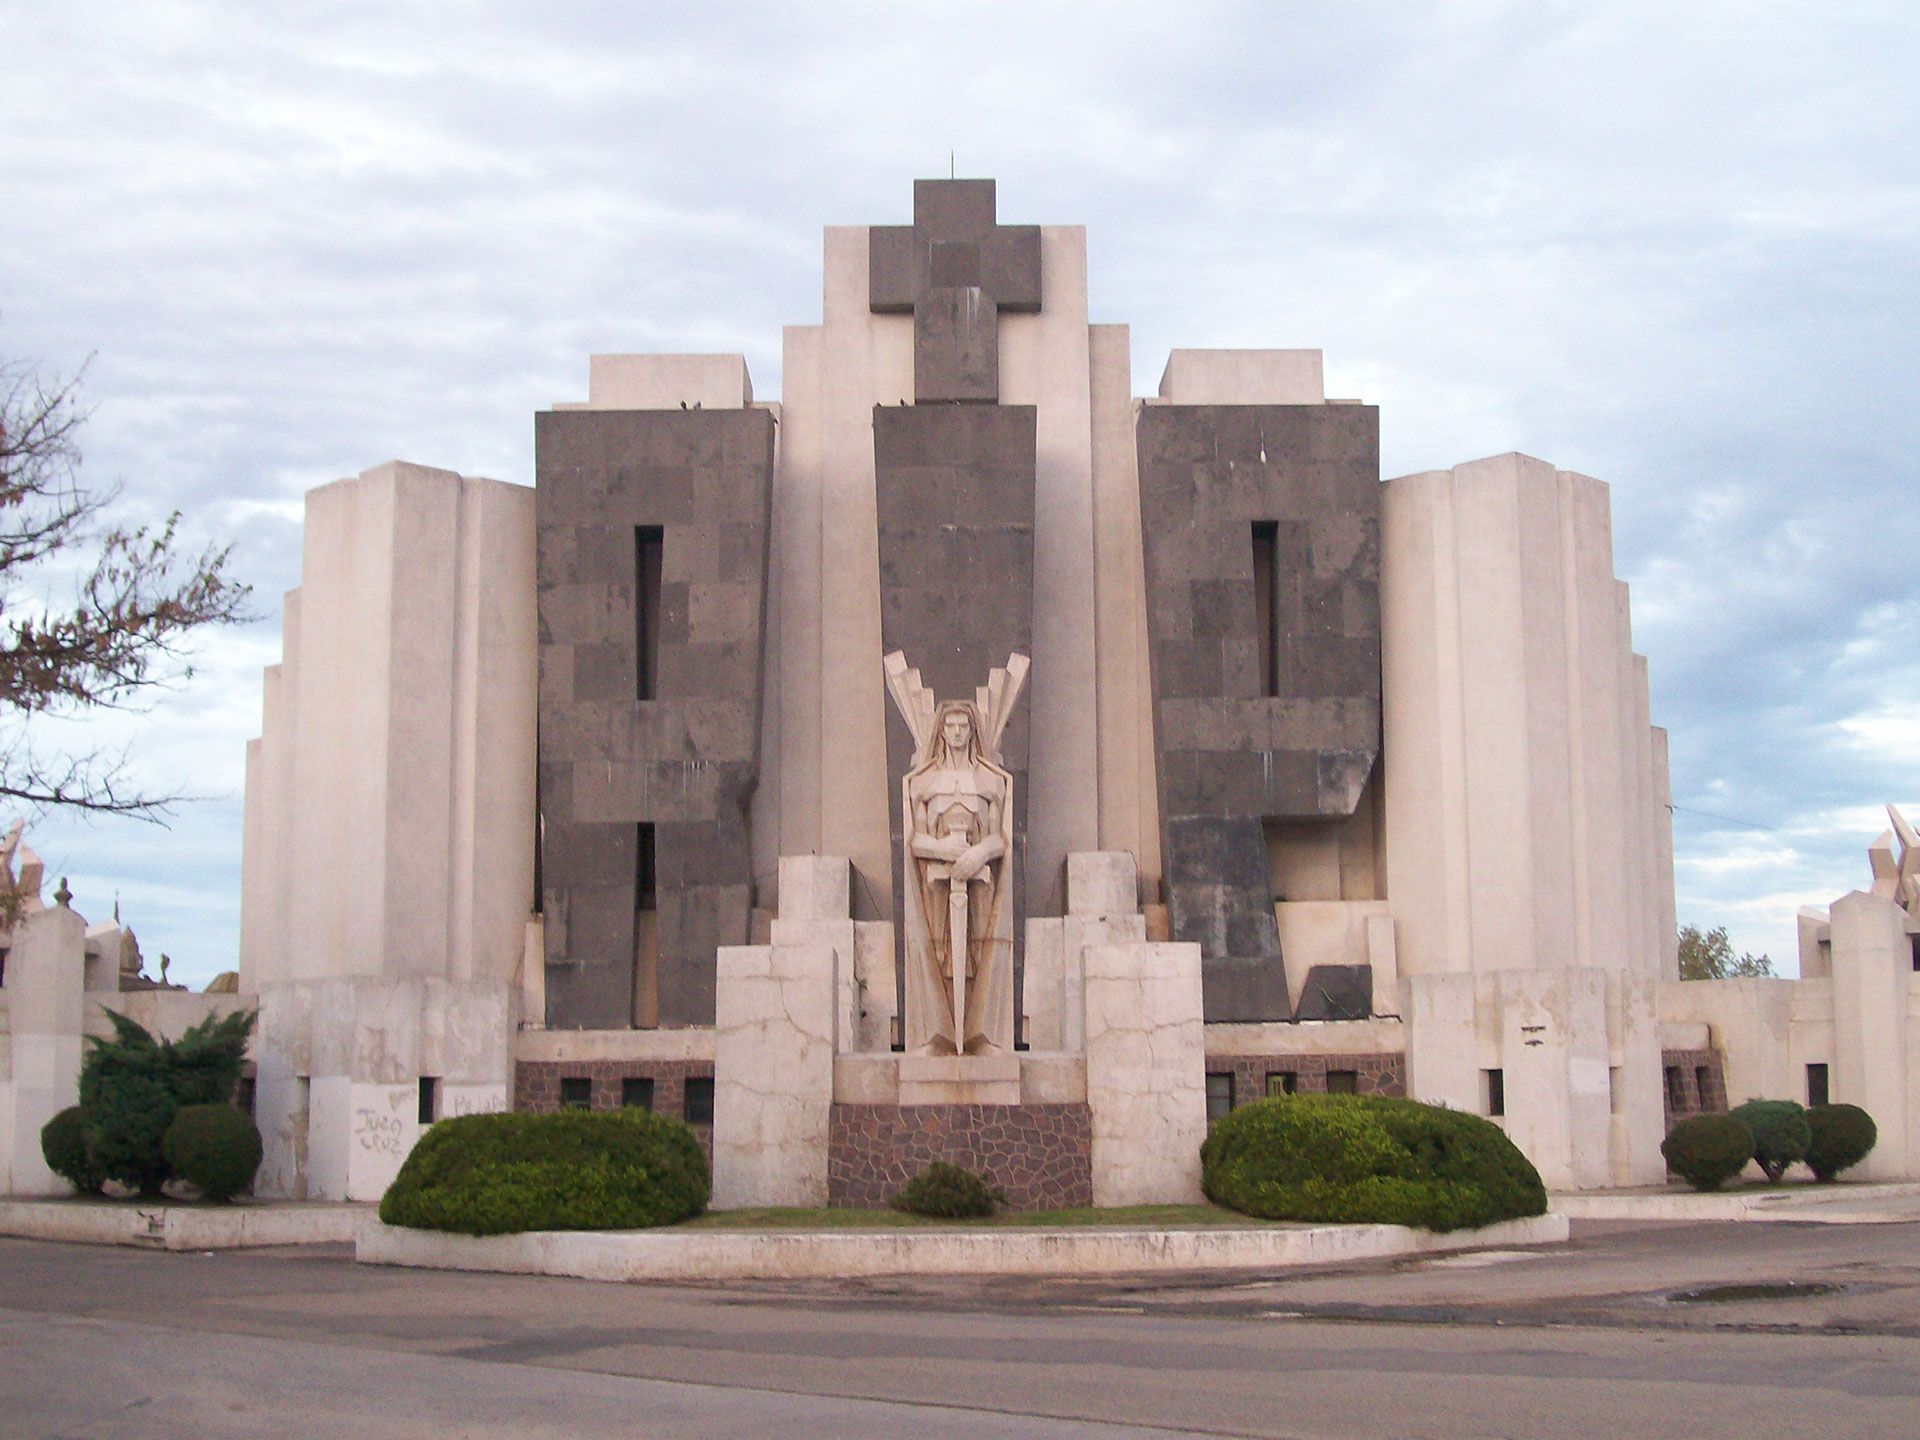 El portal del Cementerio de la localidad de Azul, obra de Salomone (Wikipedia)